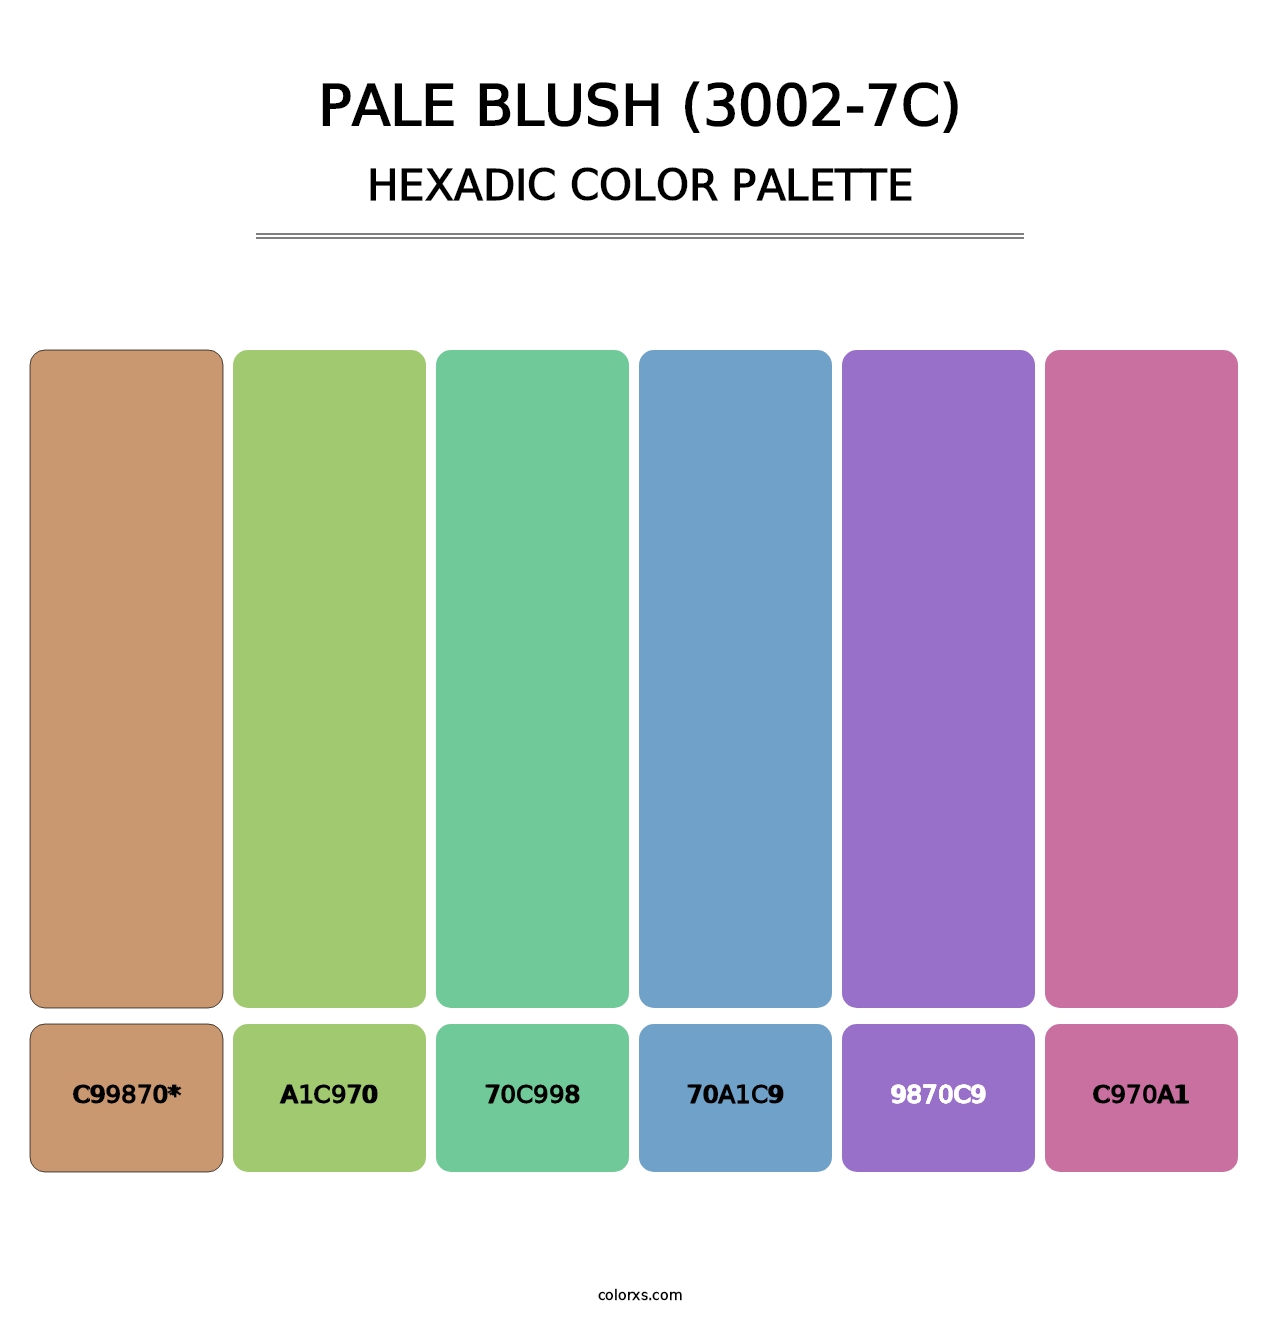 Pale Blush (3002-7C) - Hexadic Color Palette